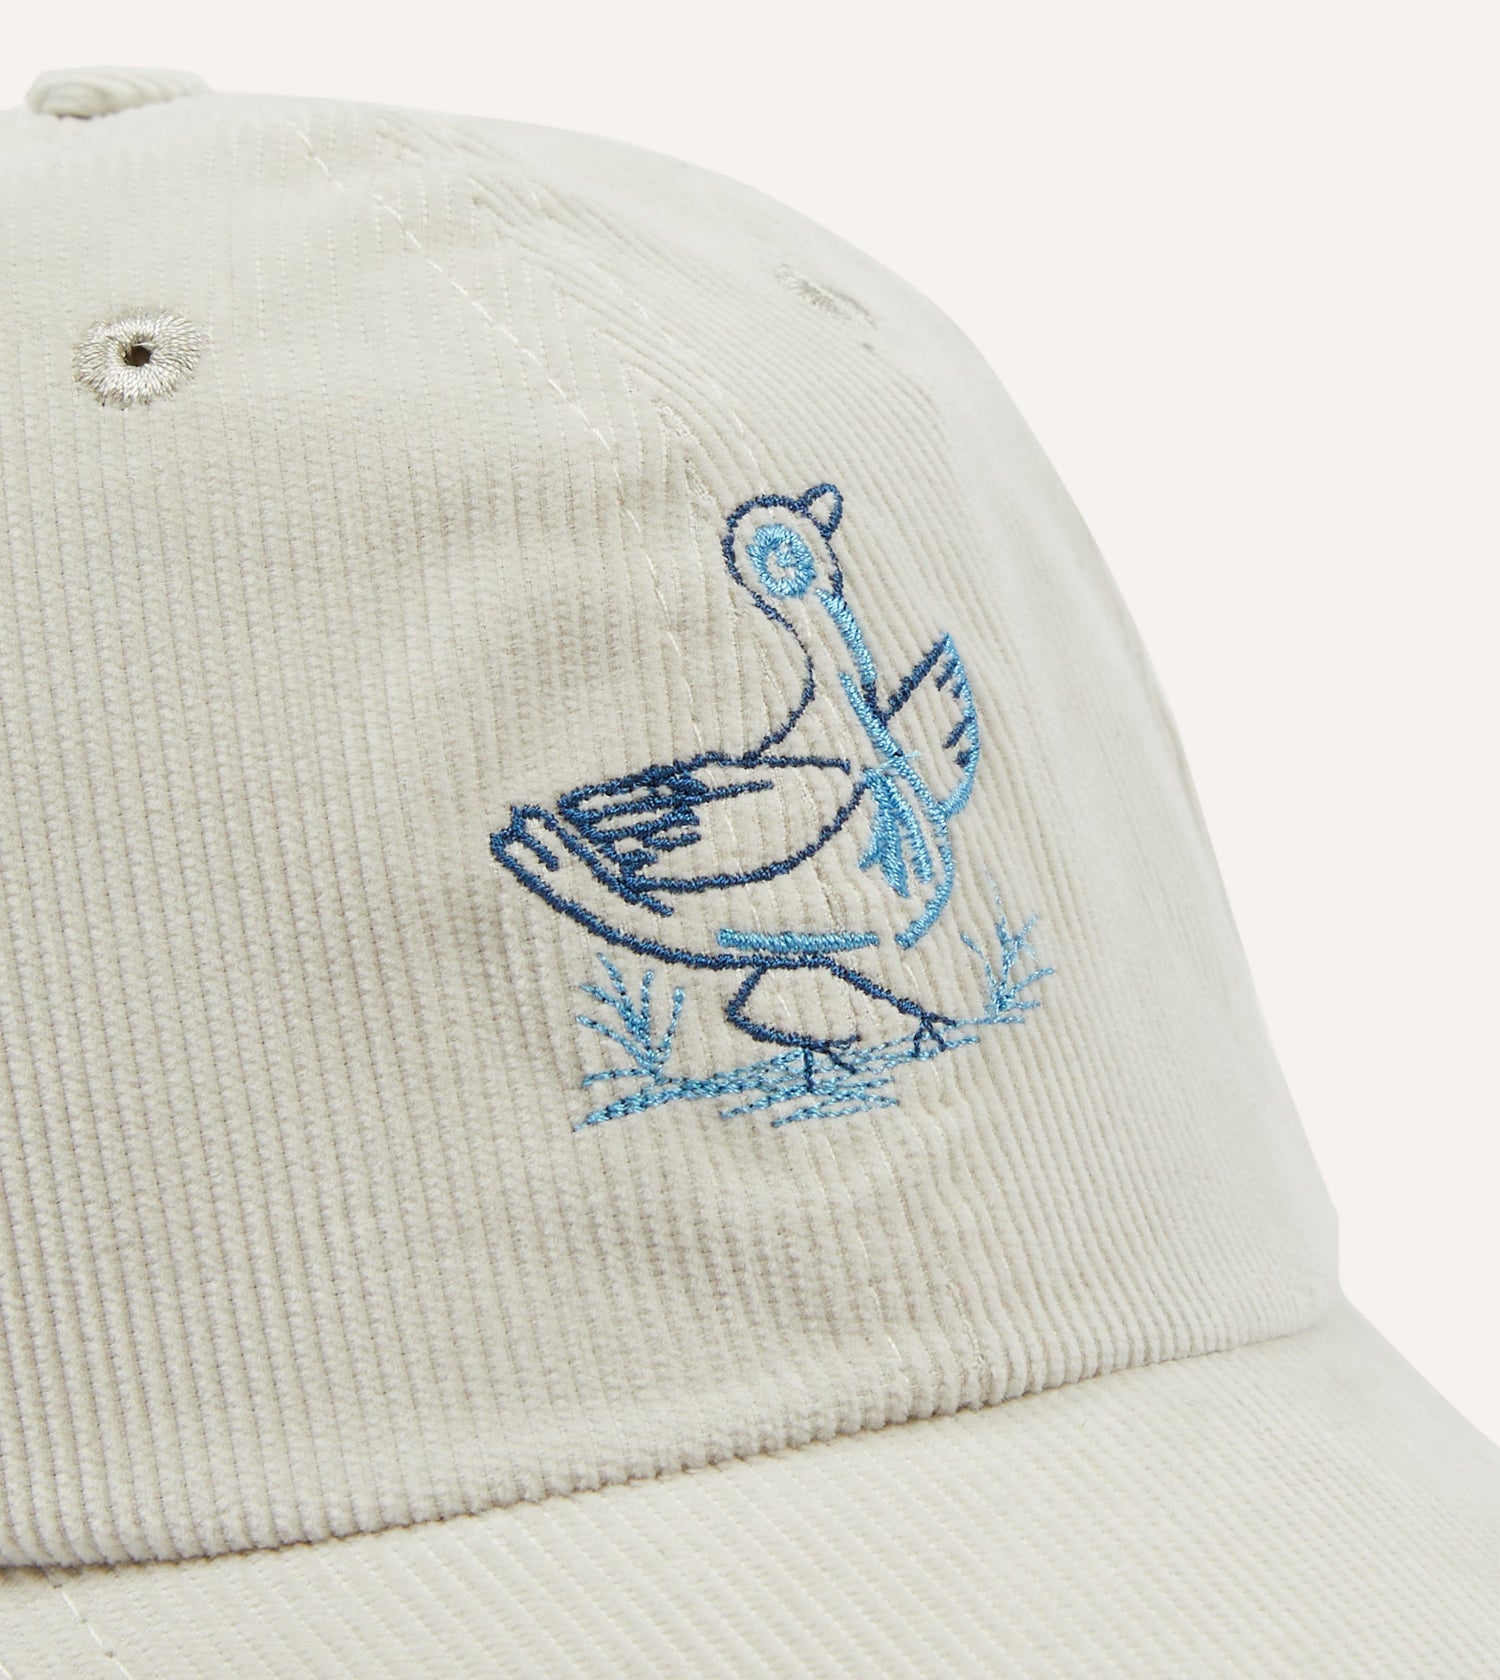 Antique White Duck Emblem Cotton Corduroy Baseball Cap